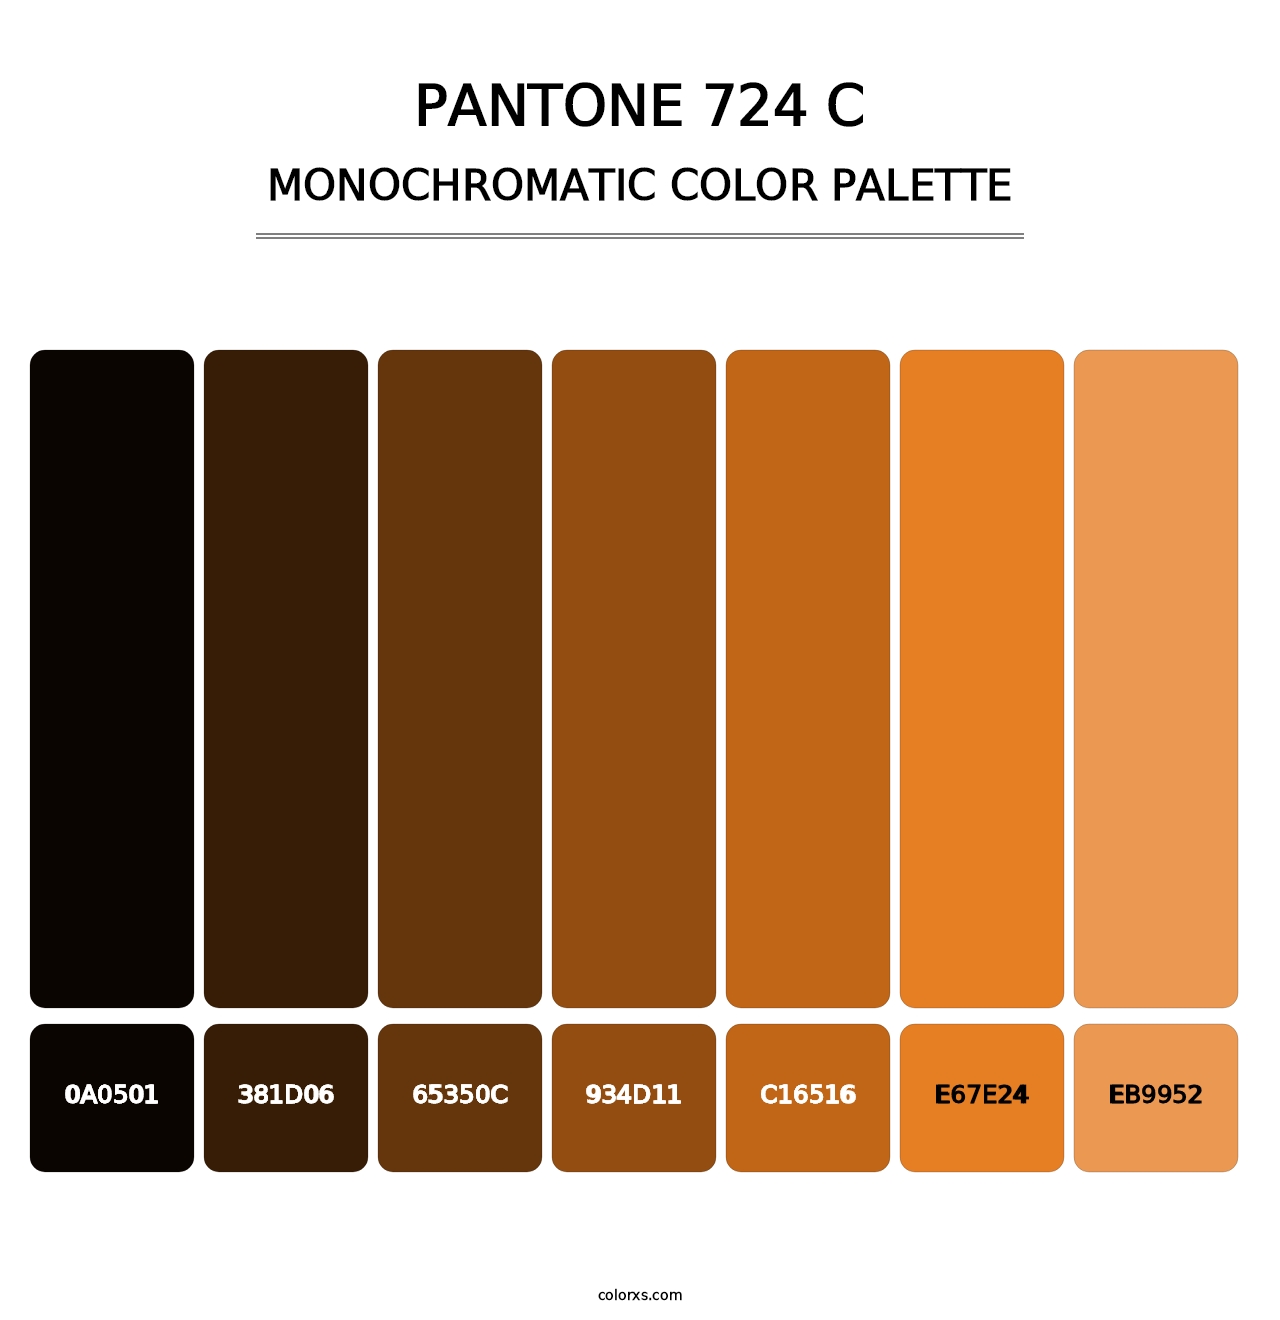 PANTONE 724 C - Monochromatic Color Palette